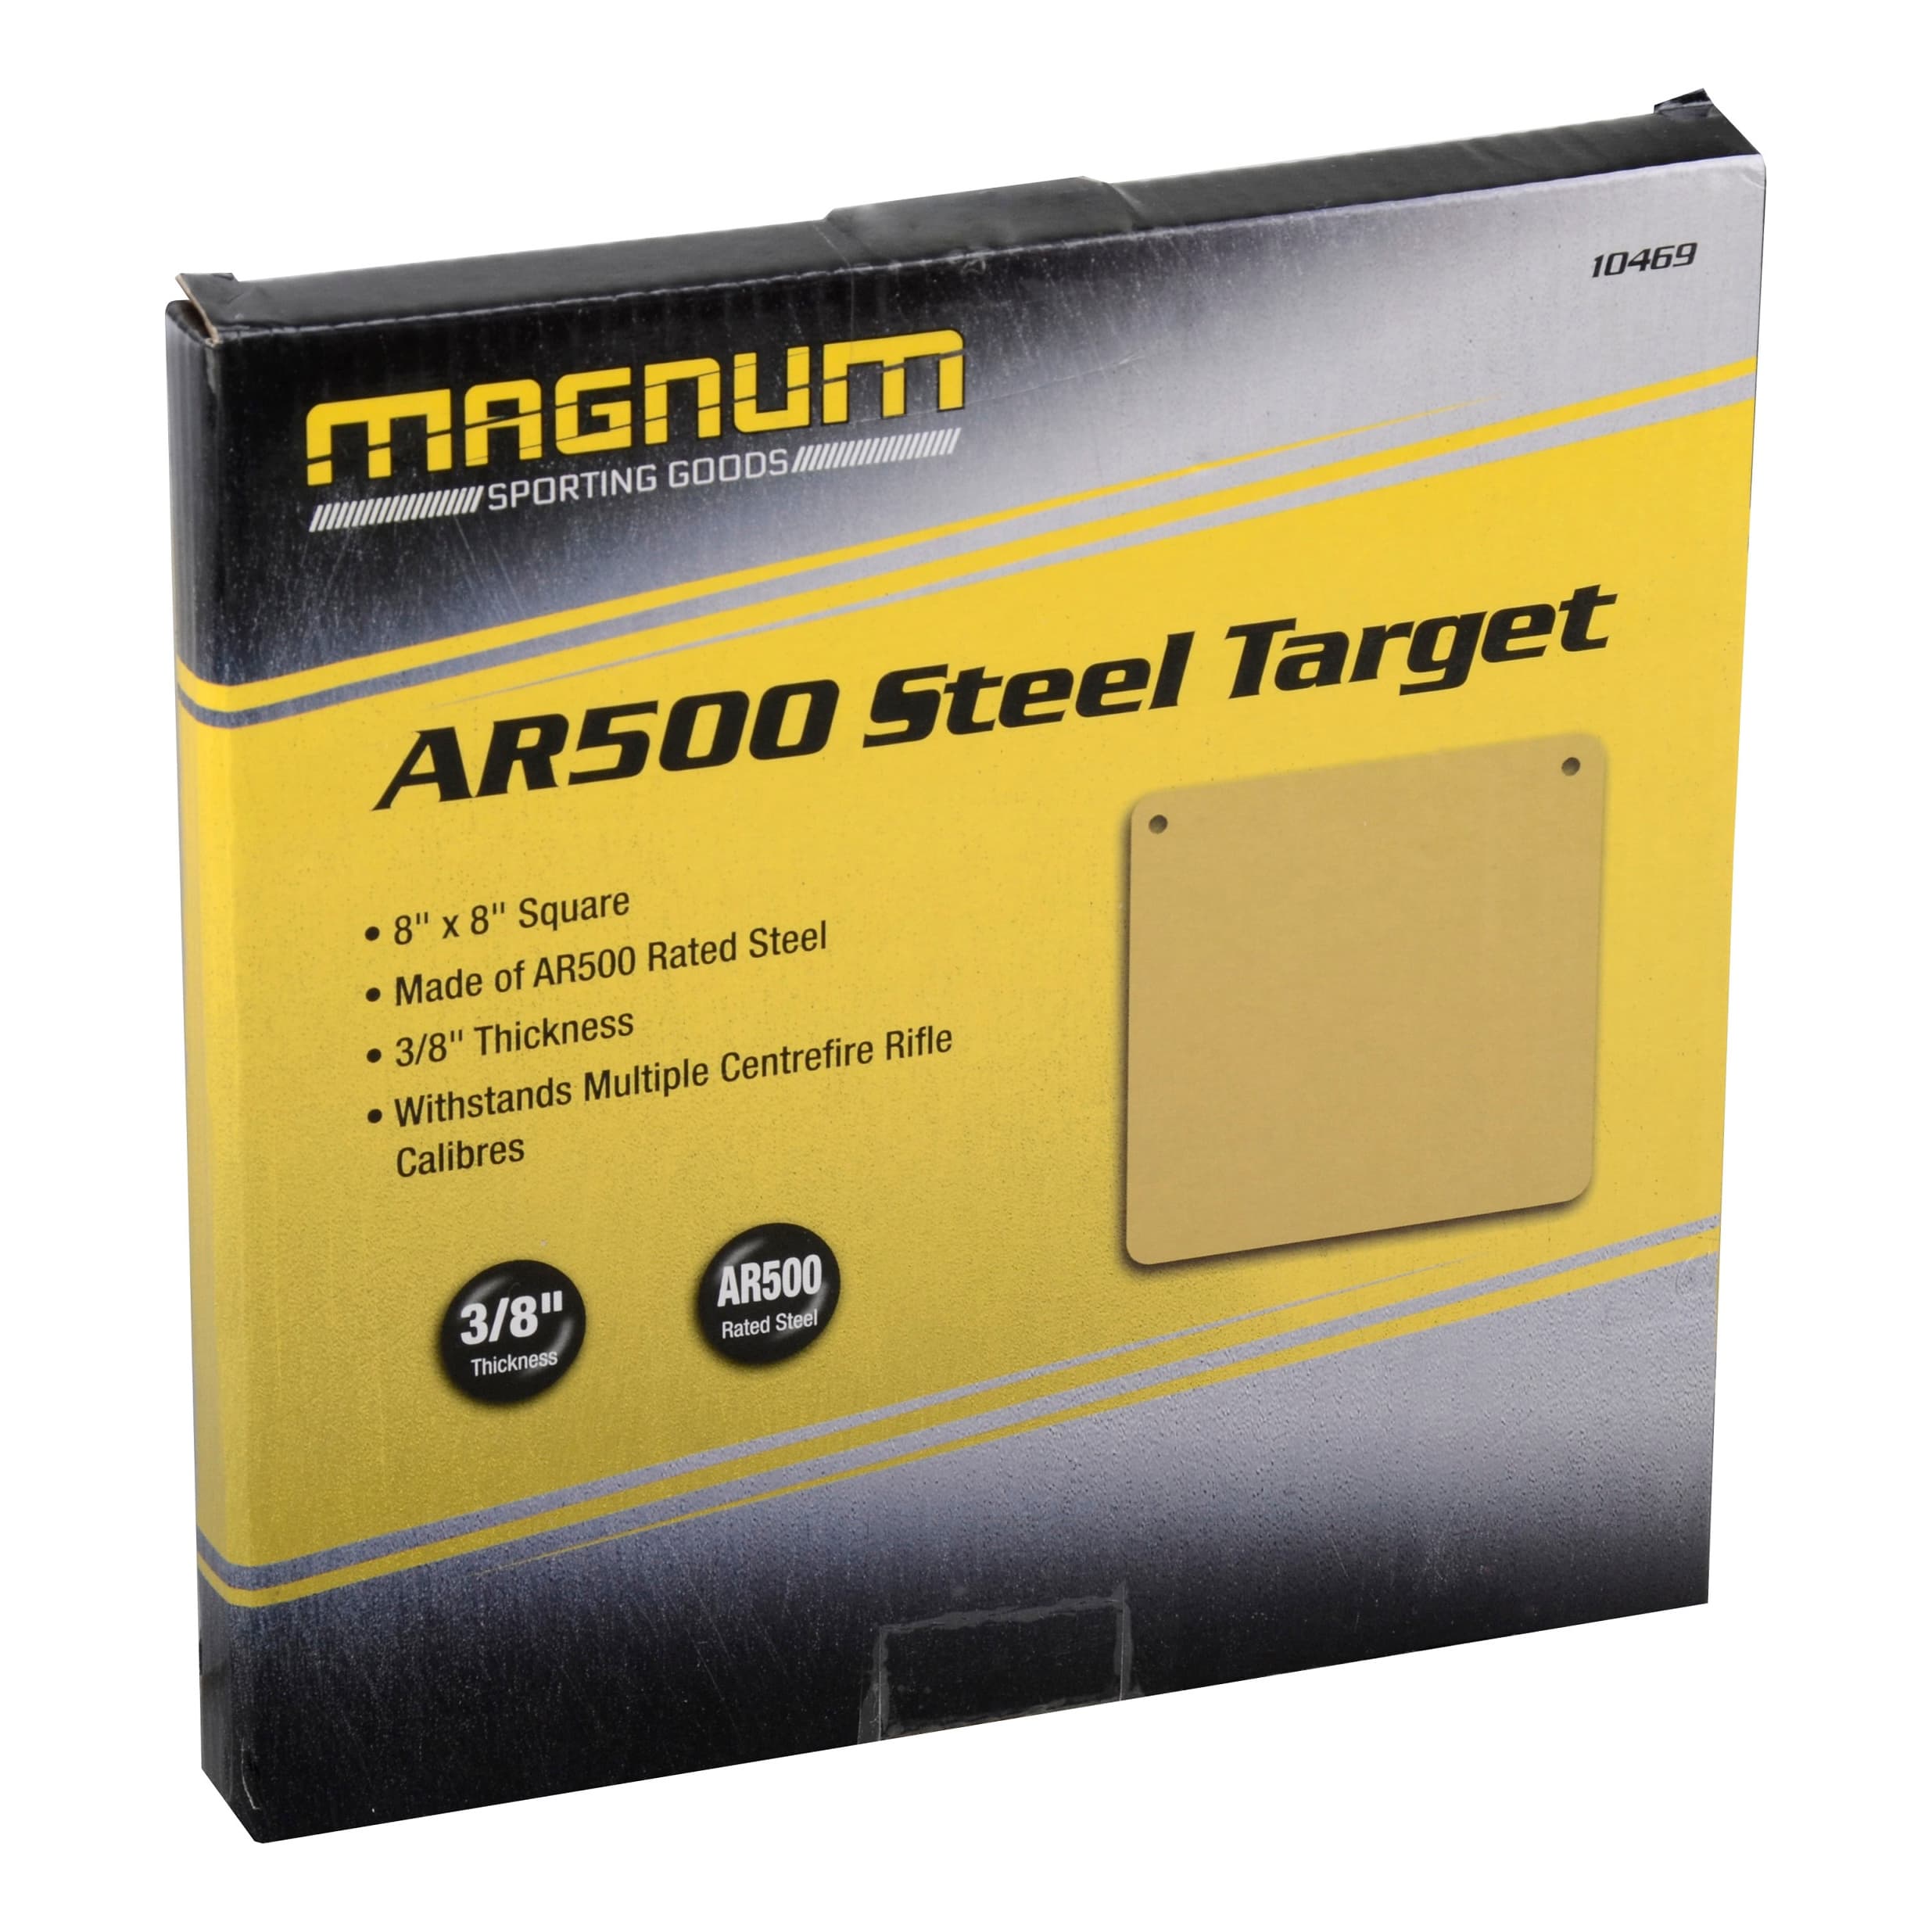 Magnum® 8”x 8” Square AR500 Steel Target